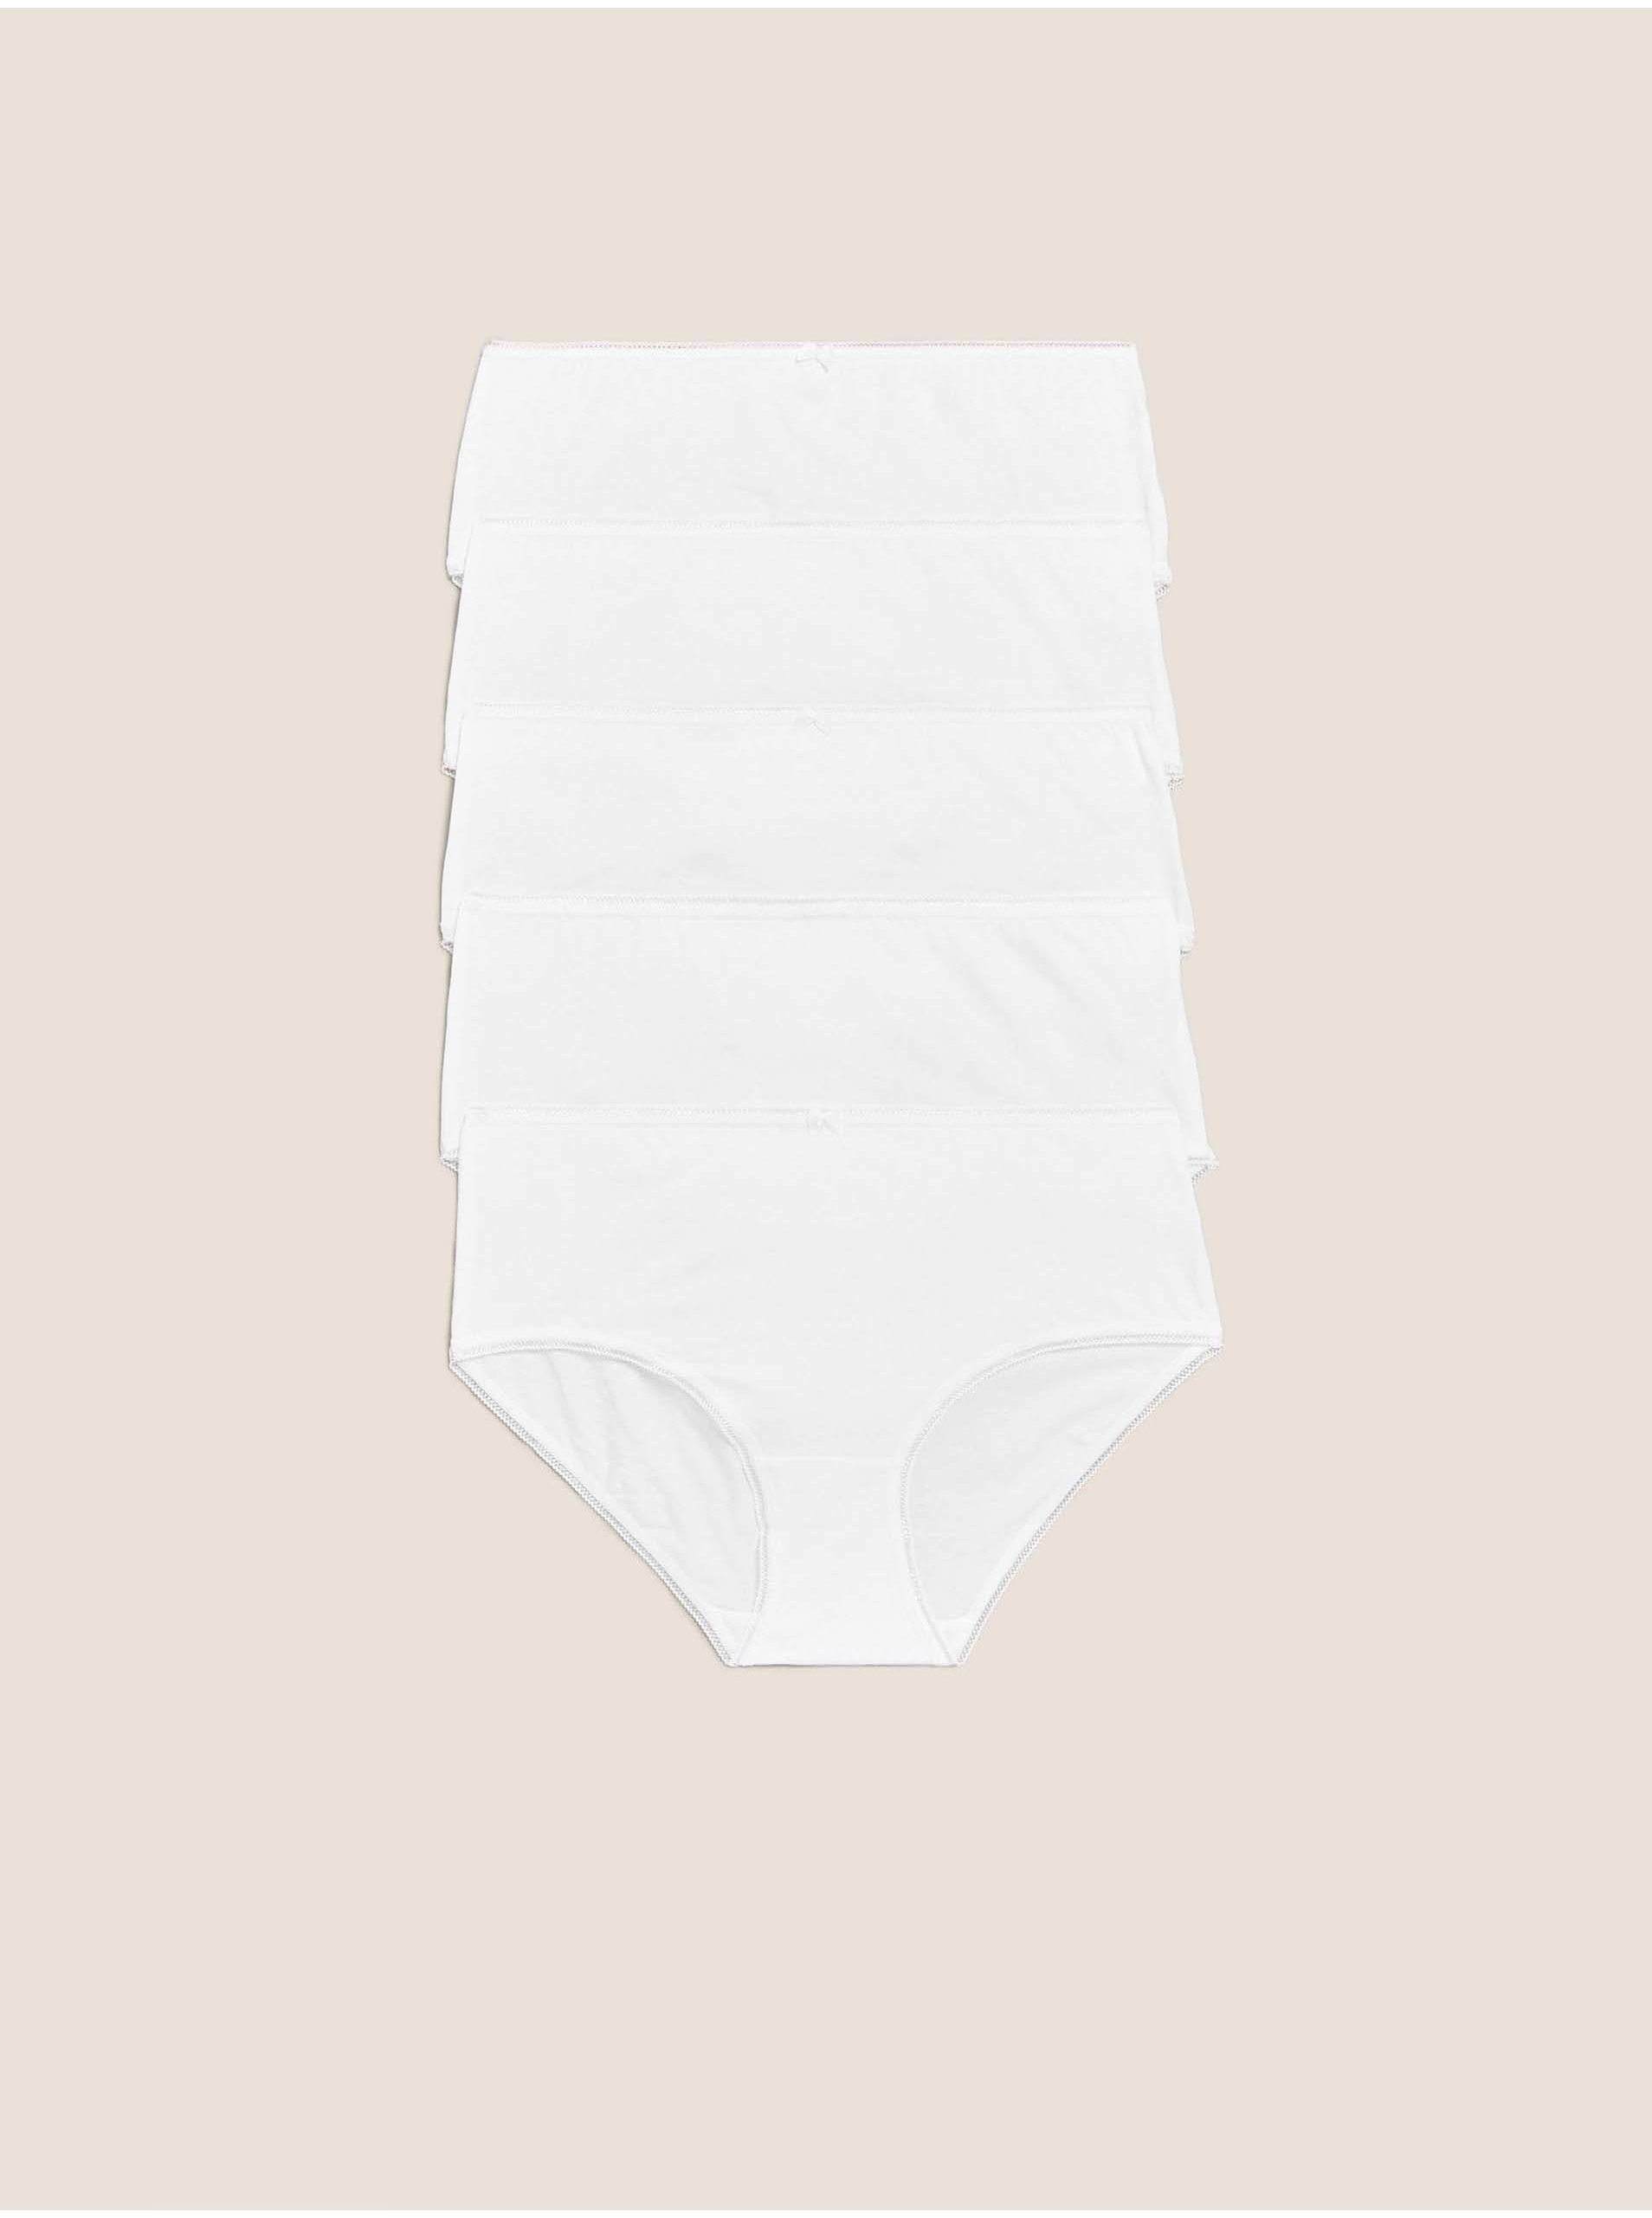 Lacno Midi nohavičky z bavlny s lycrou®, 5 ks v balení Marks & Spencer biela